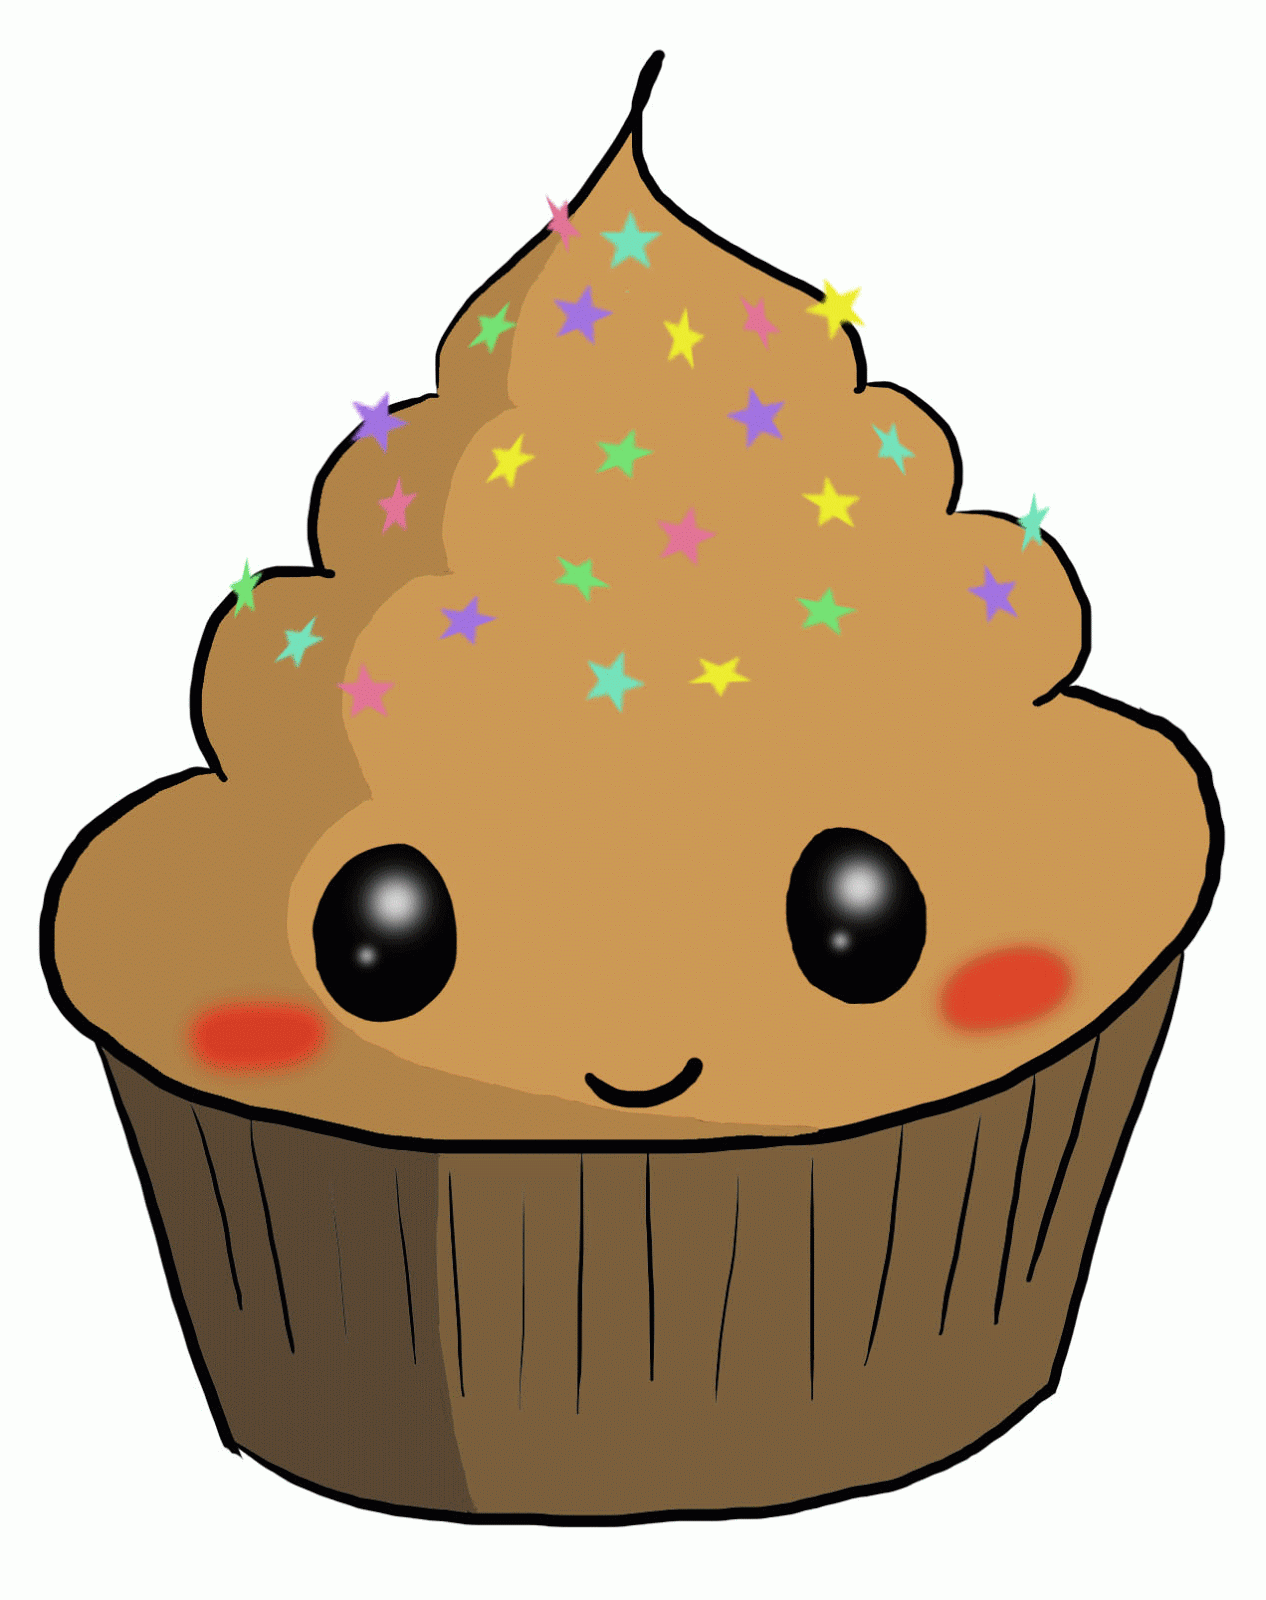 Cupcakes animados - Imagui